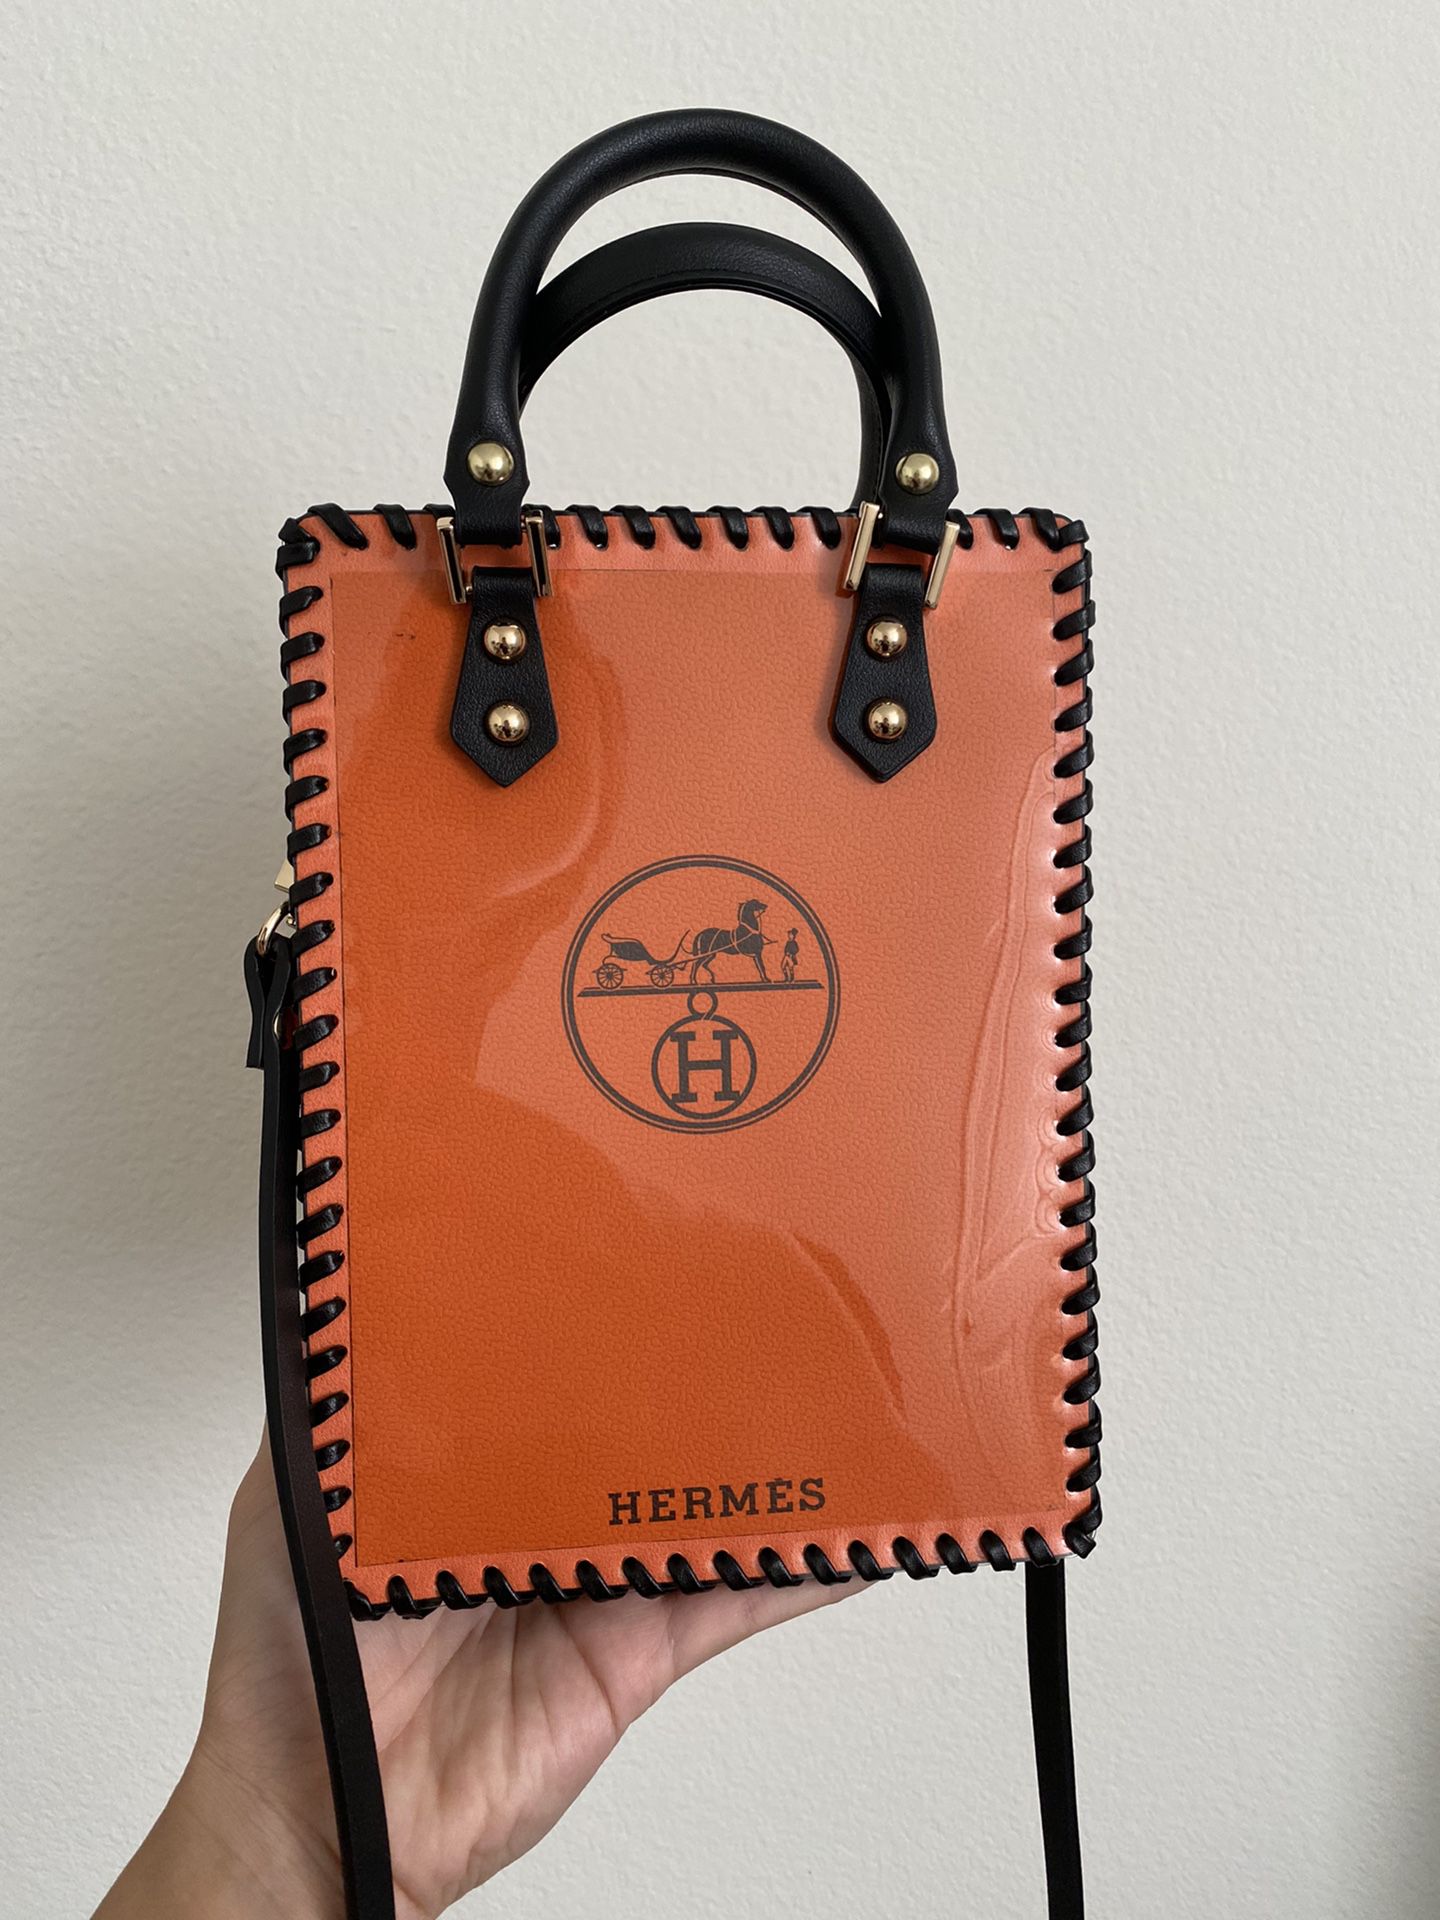 Hermes Shopping Bag- Handmade